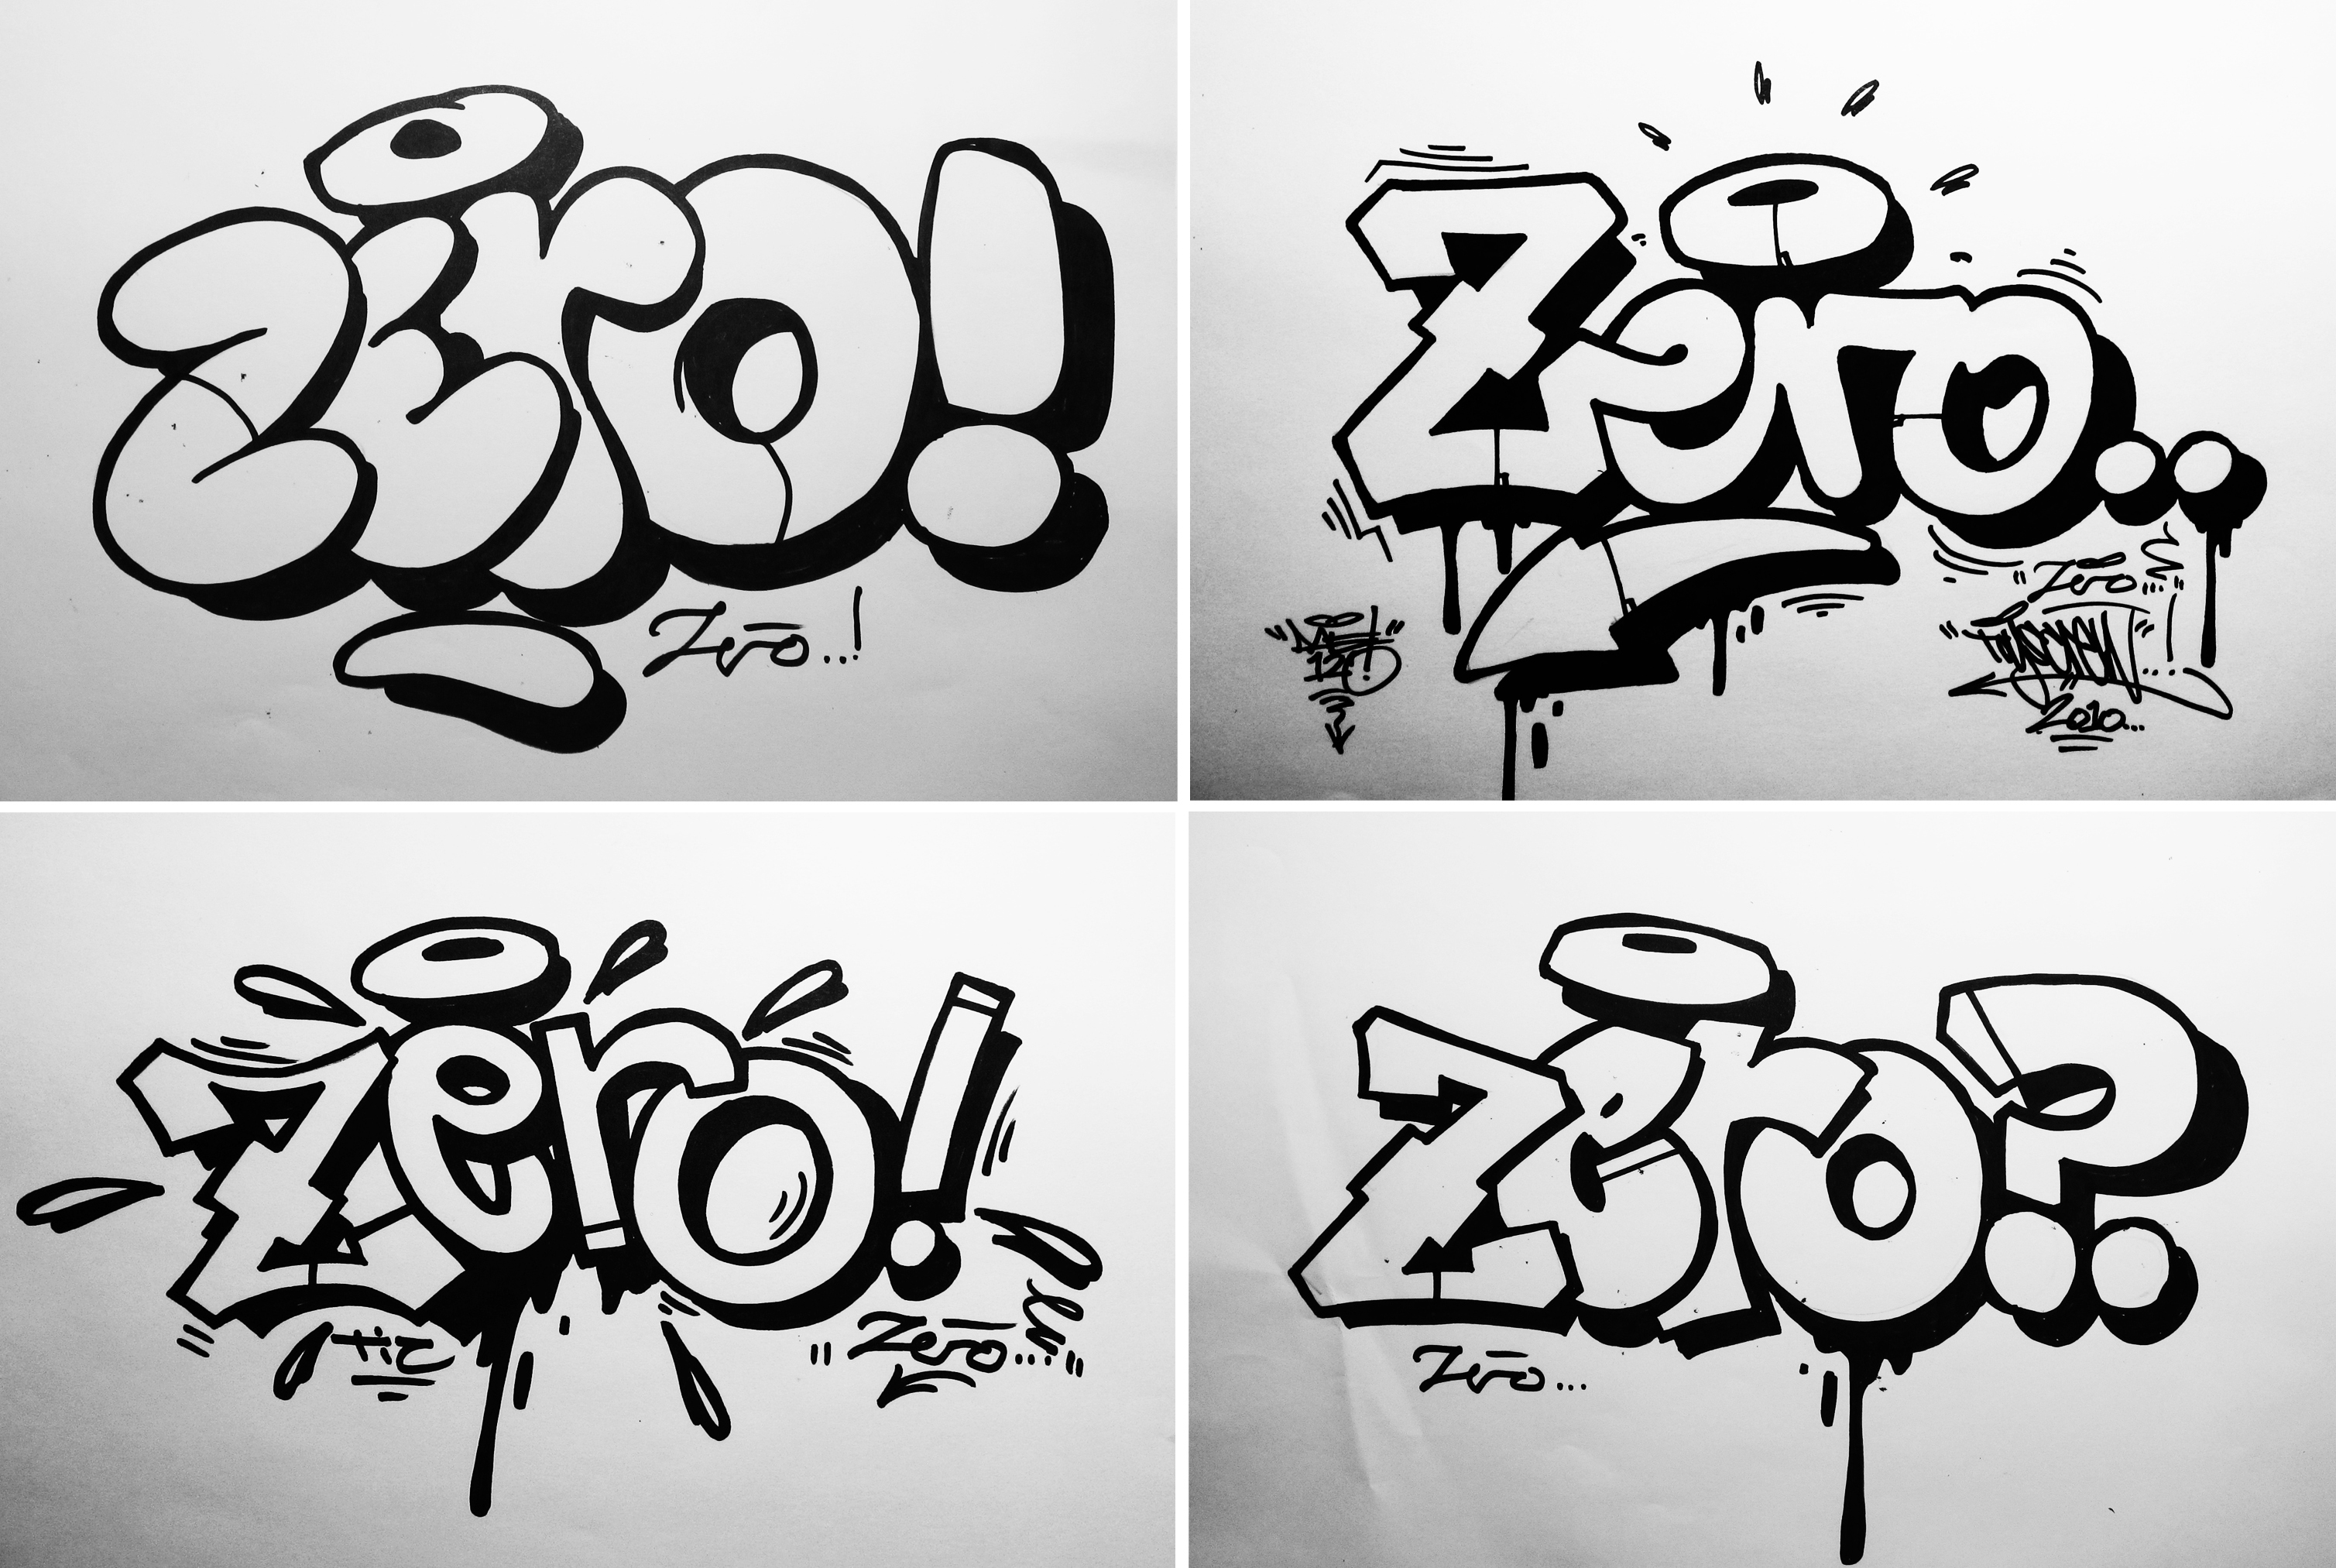 Какой можно сделать тег. Граффити для новичков. Идеи для граффити для начинающих. Рисунки граффити для начинающих. Стили рисования граффити.